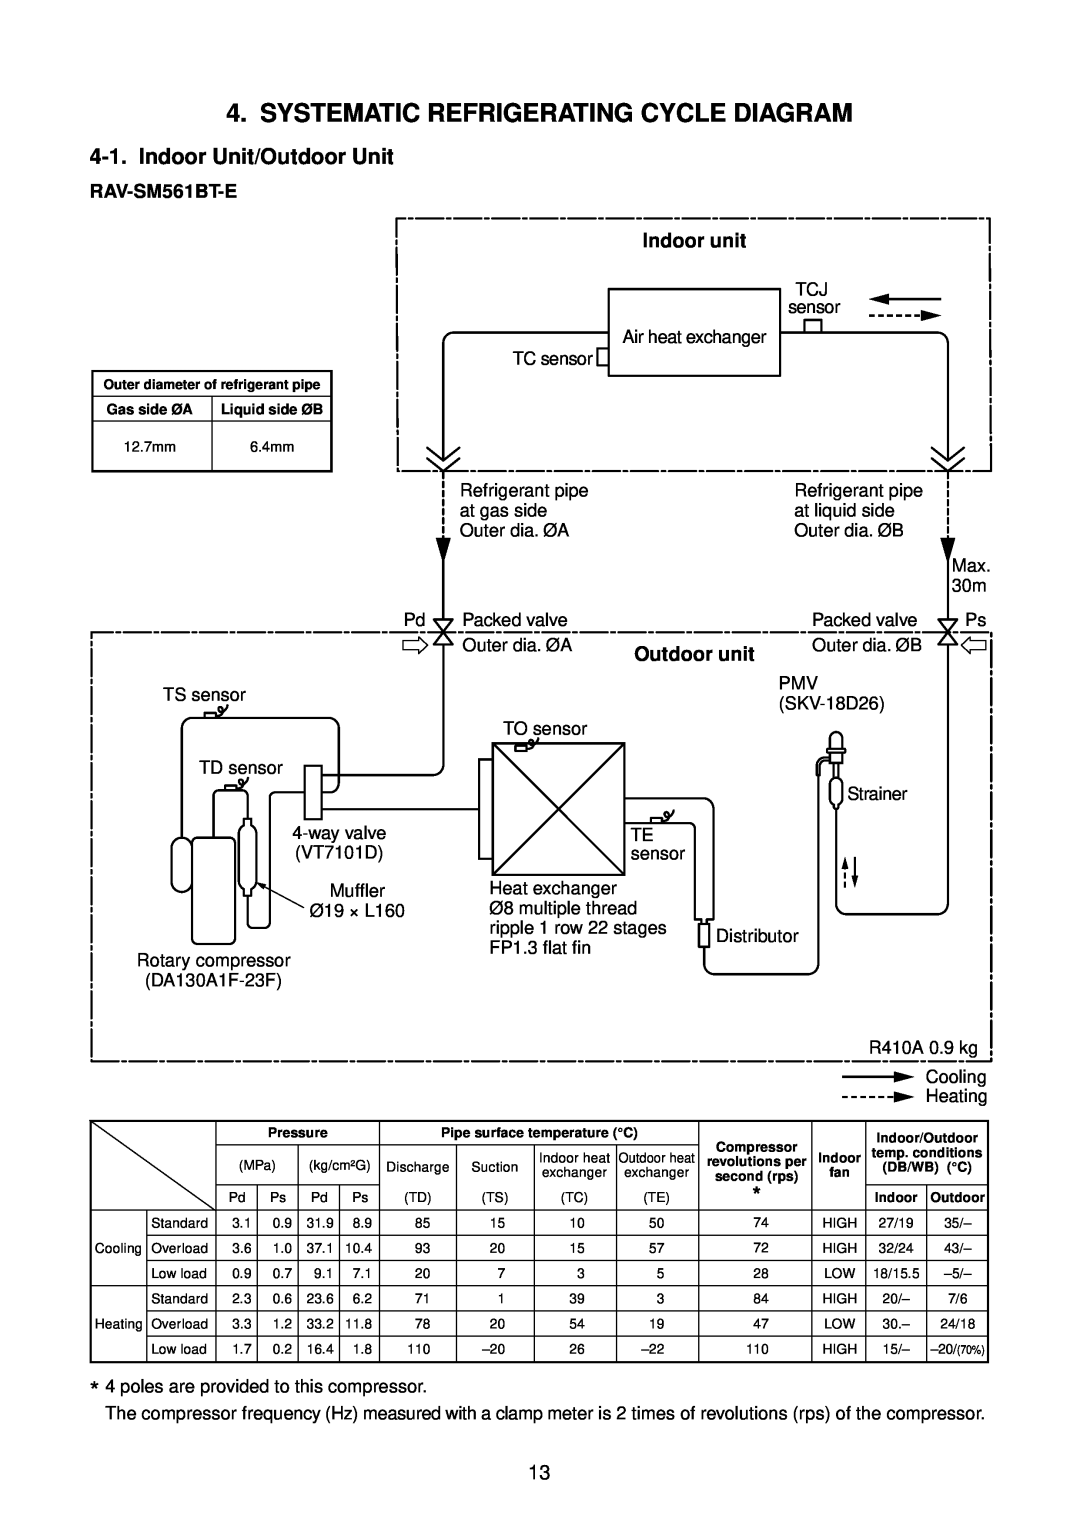 Toshiba RAV-SM1401BT-E, RAV-SM1400AT-E Systematic Refrigerating Cycle Diagram, Indoor Unit/Outdoor Unit, RAV-SM561BT-E 